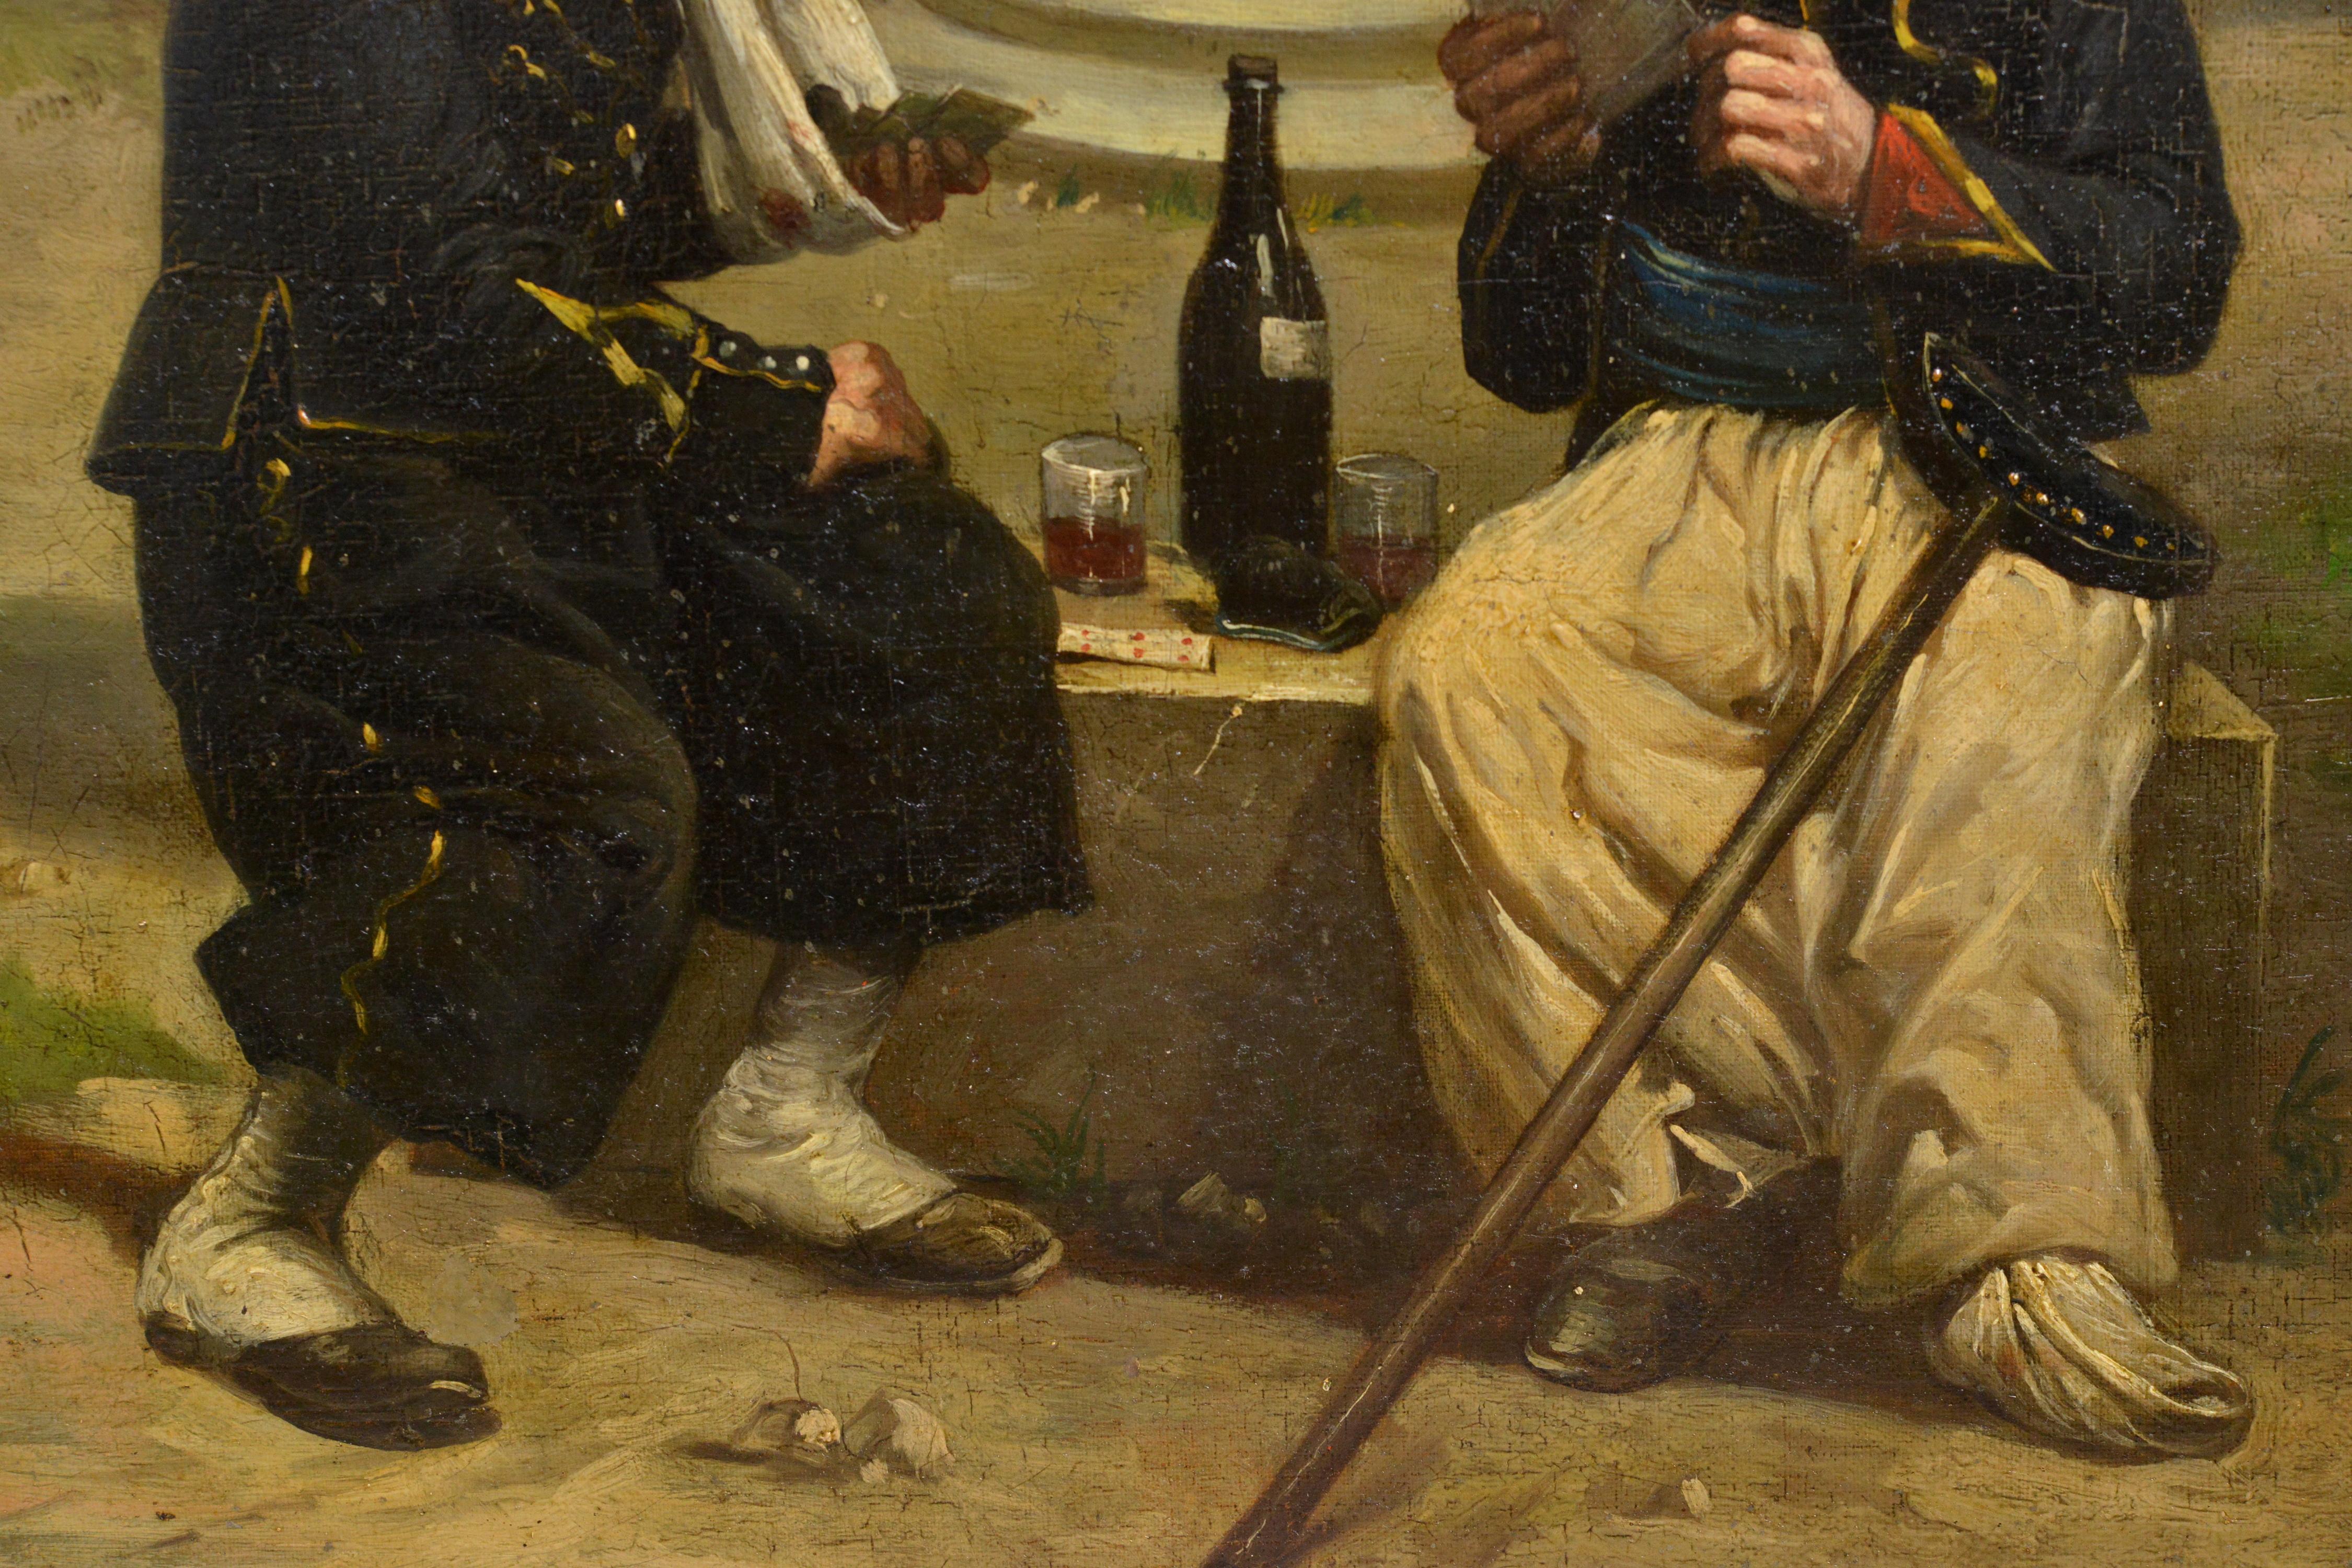 Signatur unten links: Paul Louis Narcisse Grolleron (1848 - 1901). Der französische Maler und Illustrator Paul Grolleron ist nach wie vor am bekanntesten für seine zahlreichen, gut beobachteten Bilder aus dem Deutsch-Französischen Krieg, deren